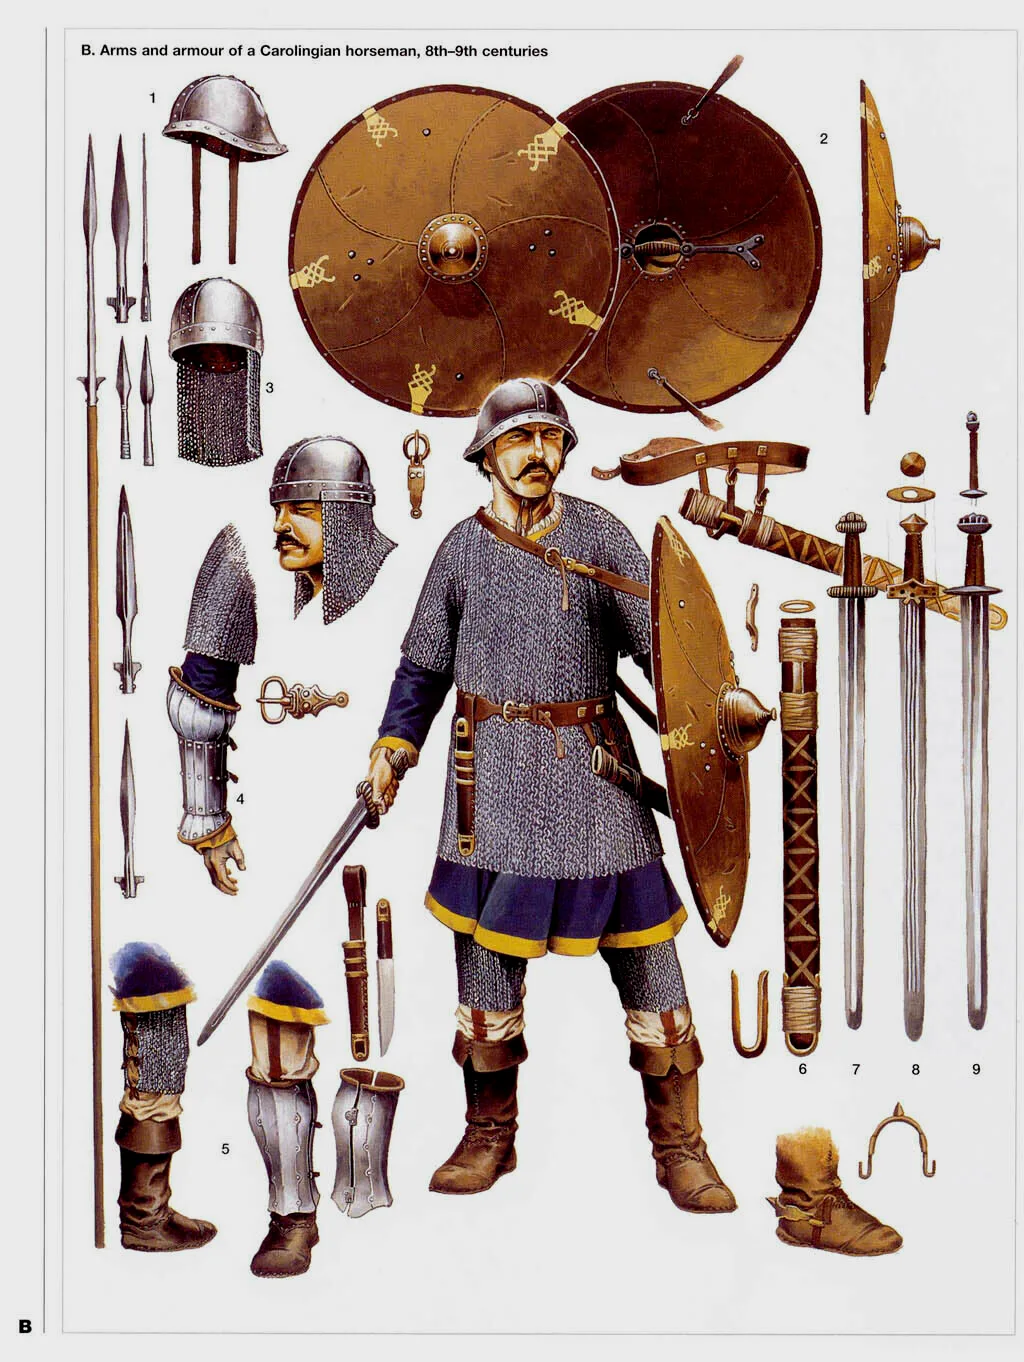 加洛林骑兵的全套装备，1：法兰克式头盔，2：盾牌，3：带护颈的瓣盔（有实物被发现），4：甲袖，5：胫甲，6-9：剑鞘和剑